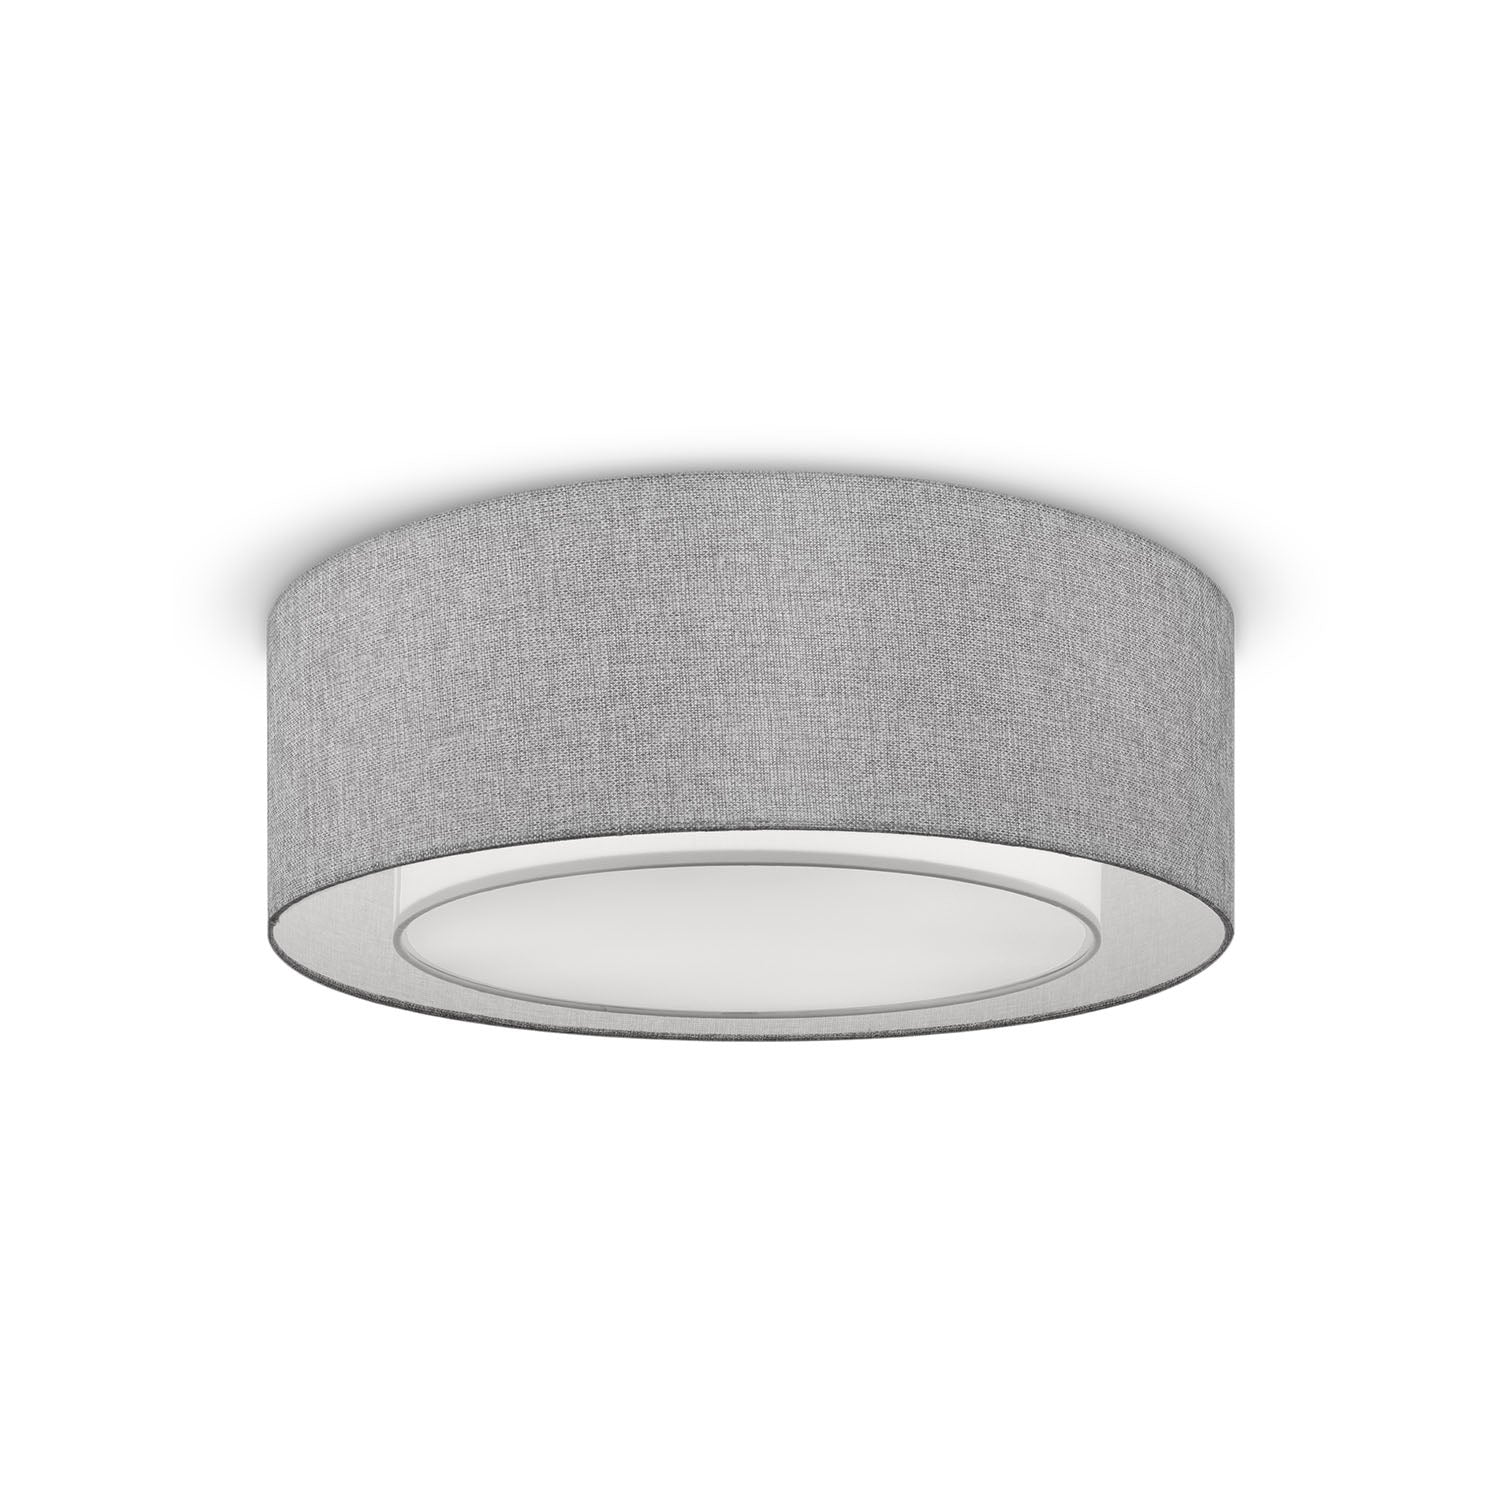 BERGAMO - Circular ceiling light in simple fabric